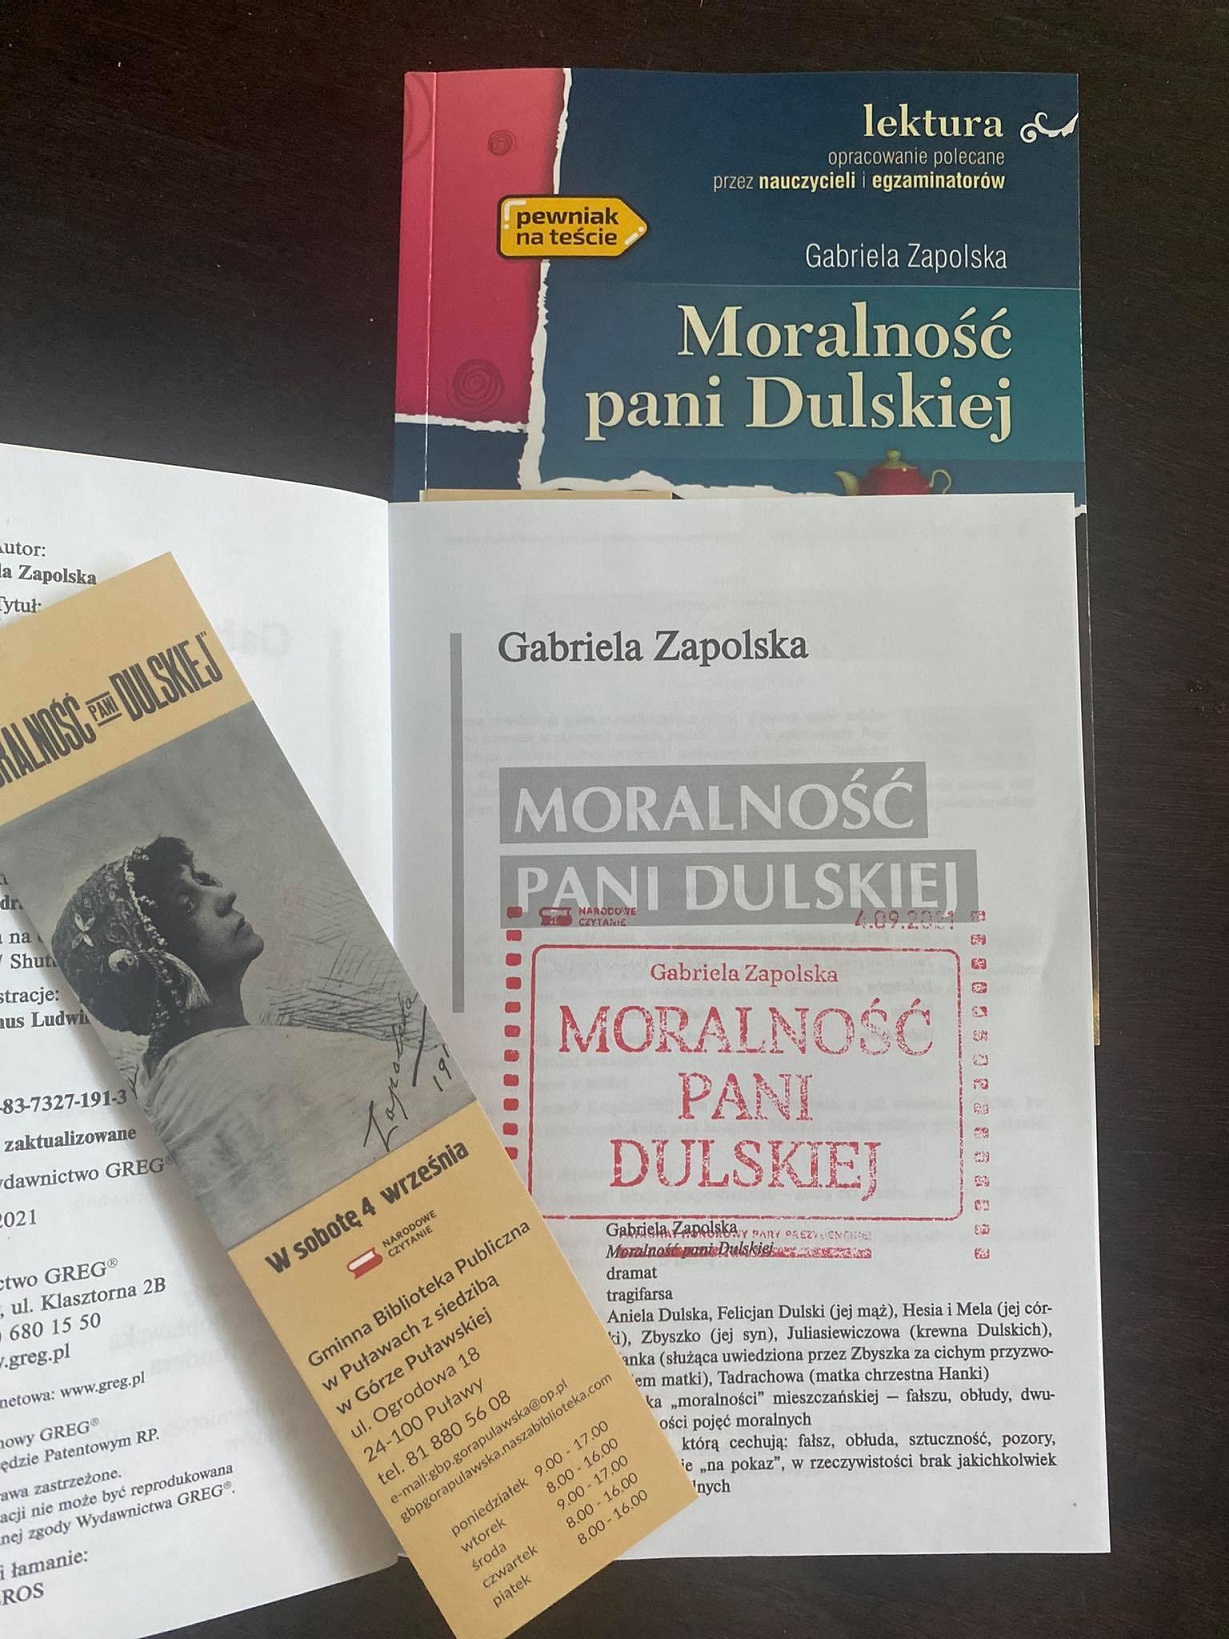 Zdjęcie prezentuje egzemplarze dramatu "Moralności Pani Dulskiej" wraz z okolicznościową pieczęcią.